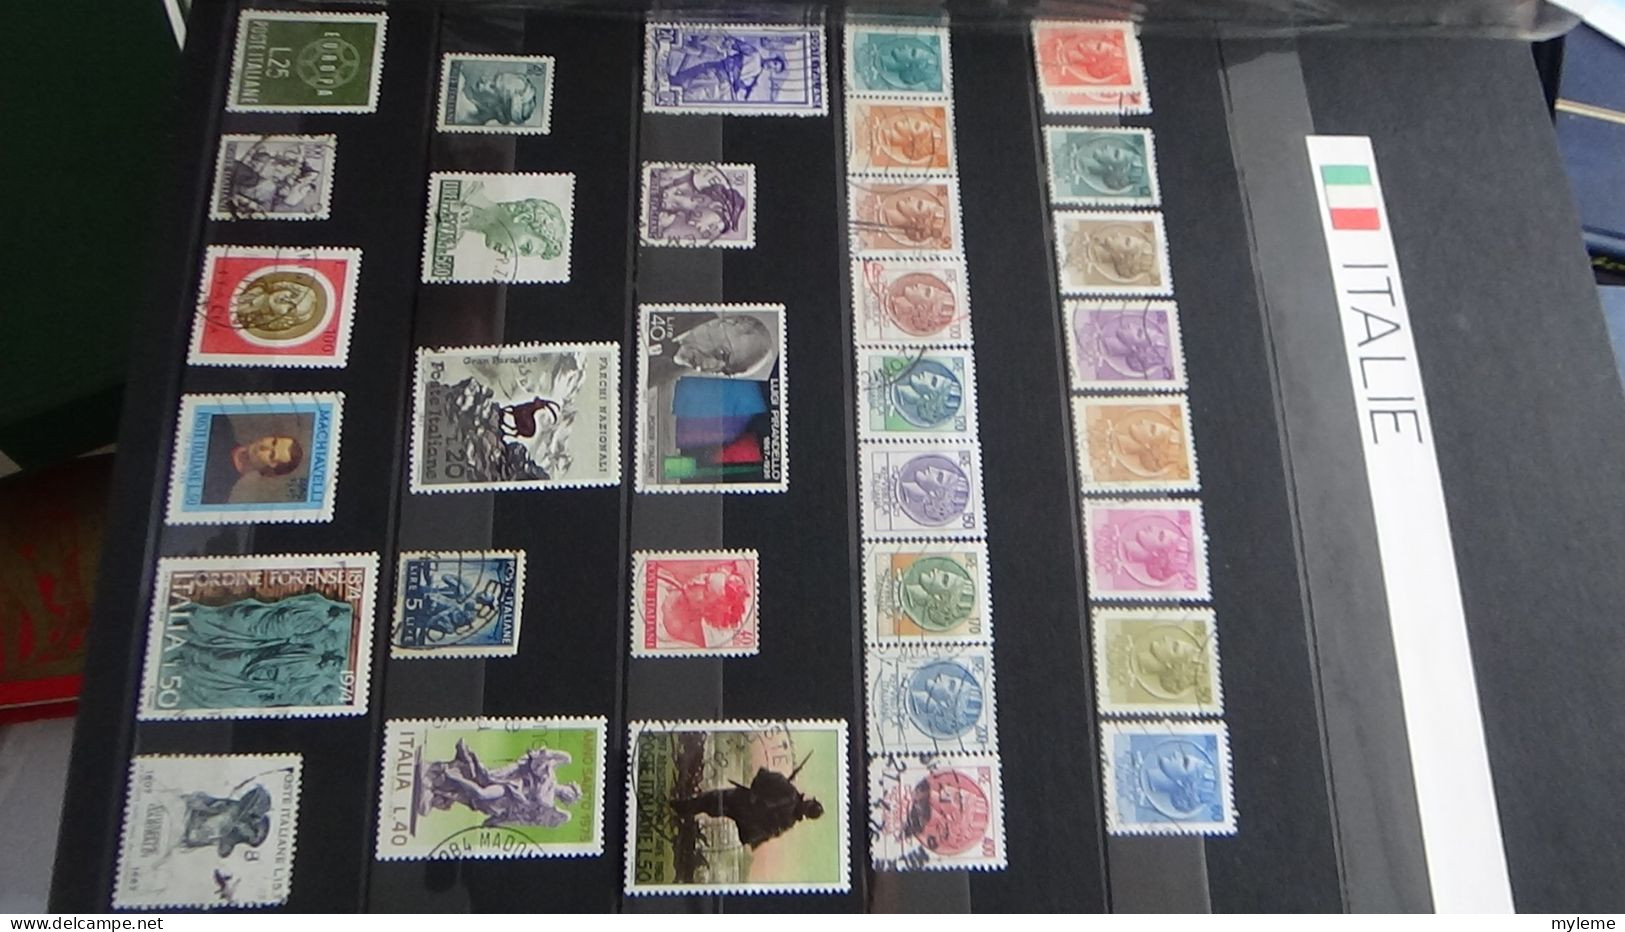 AZ147 Album de timbres oblitérés et *de divers pays + plaquette de timbres ** de France. A saisir !!